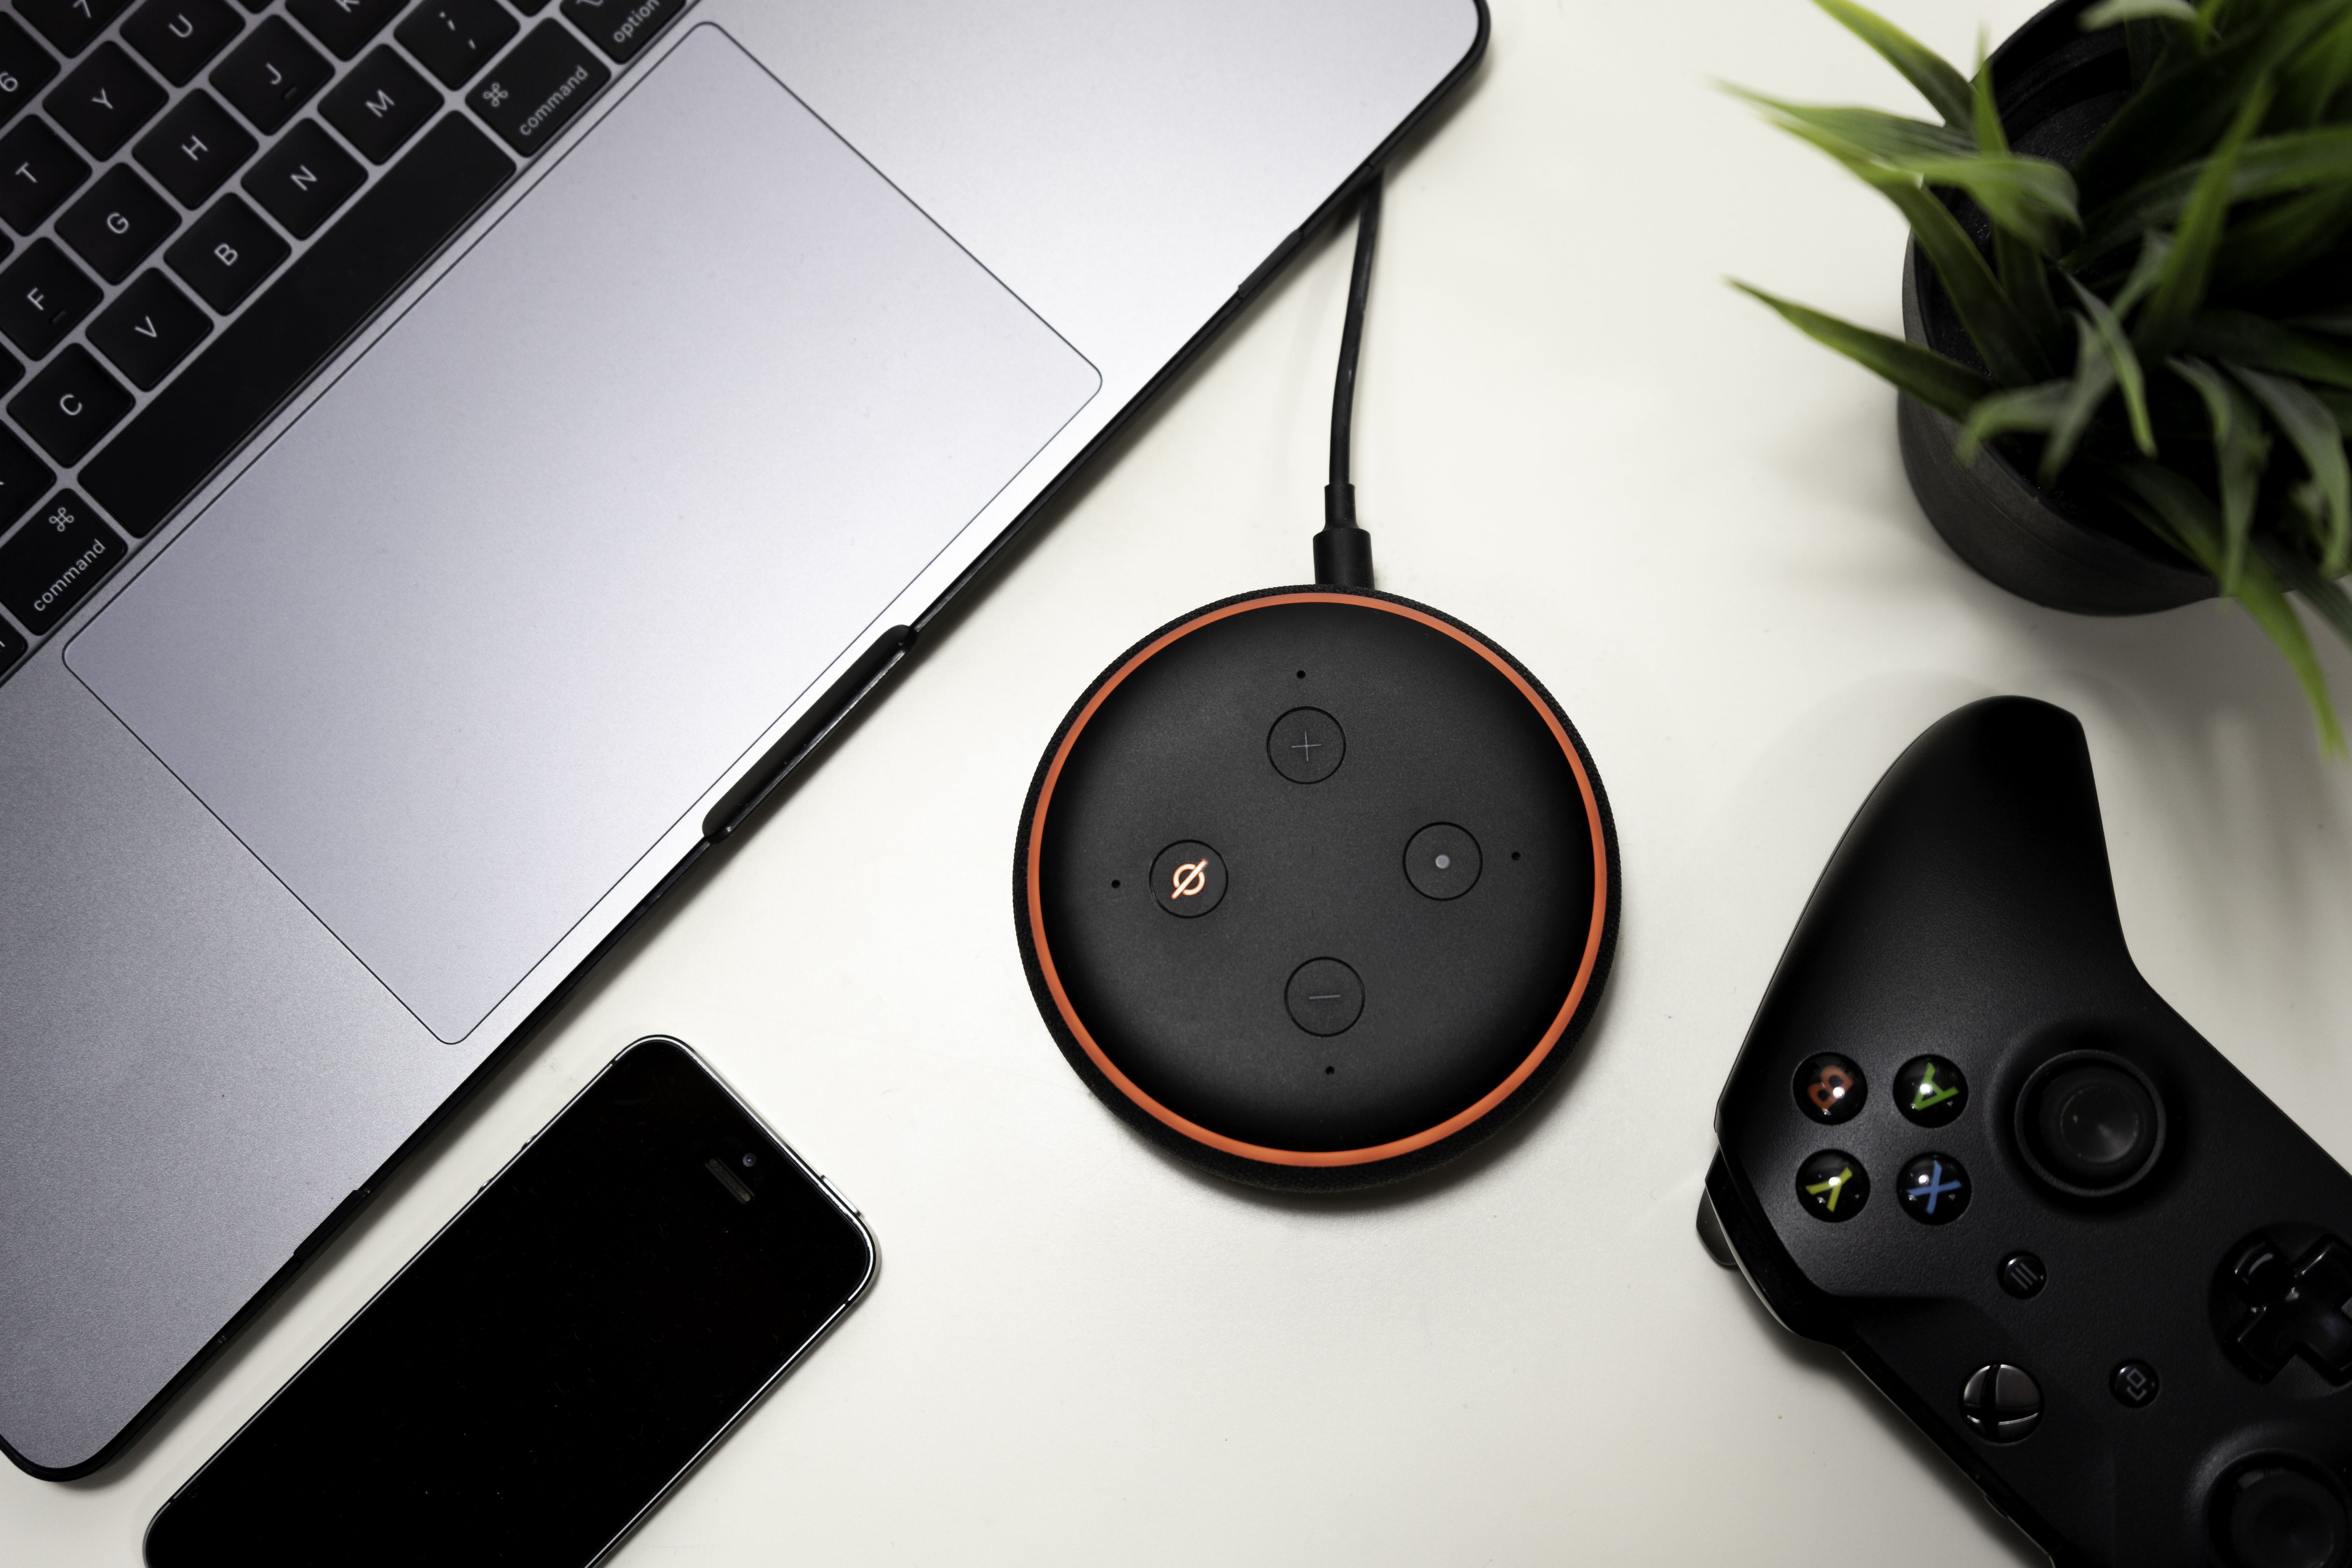 alexa reset muted - Come resettare il tuo Amazon Echo se Alexa smette di ascoltare